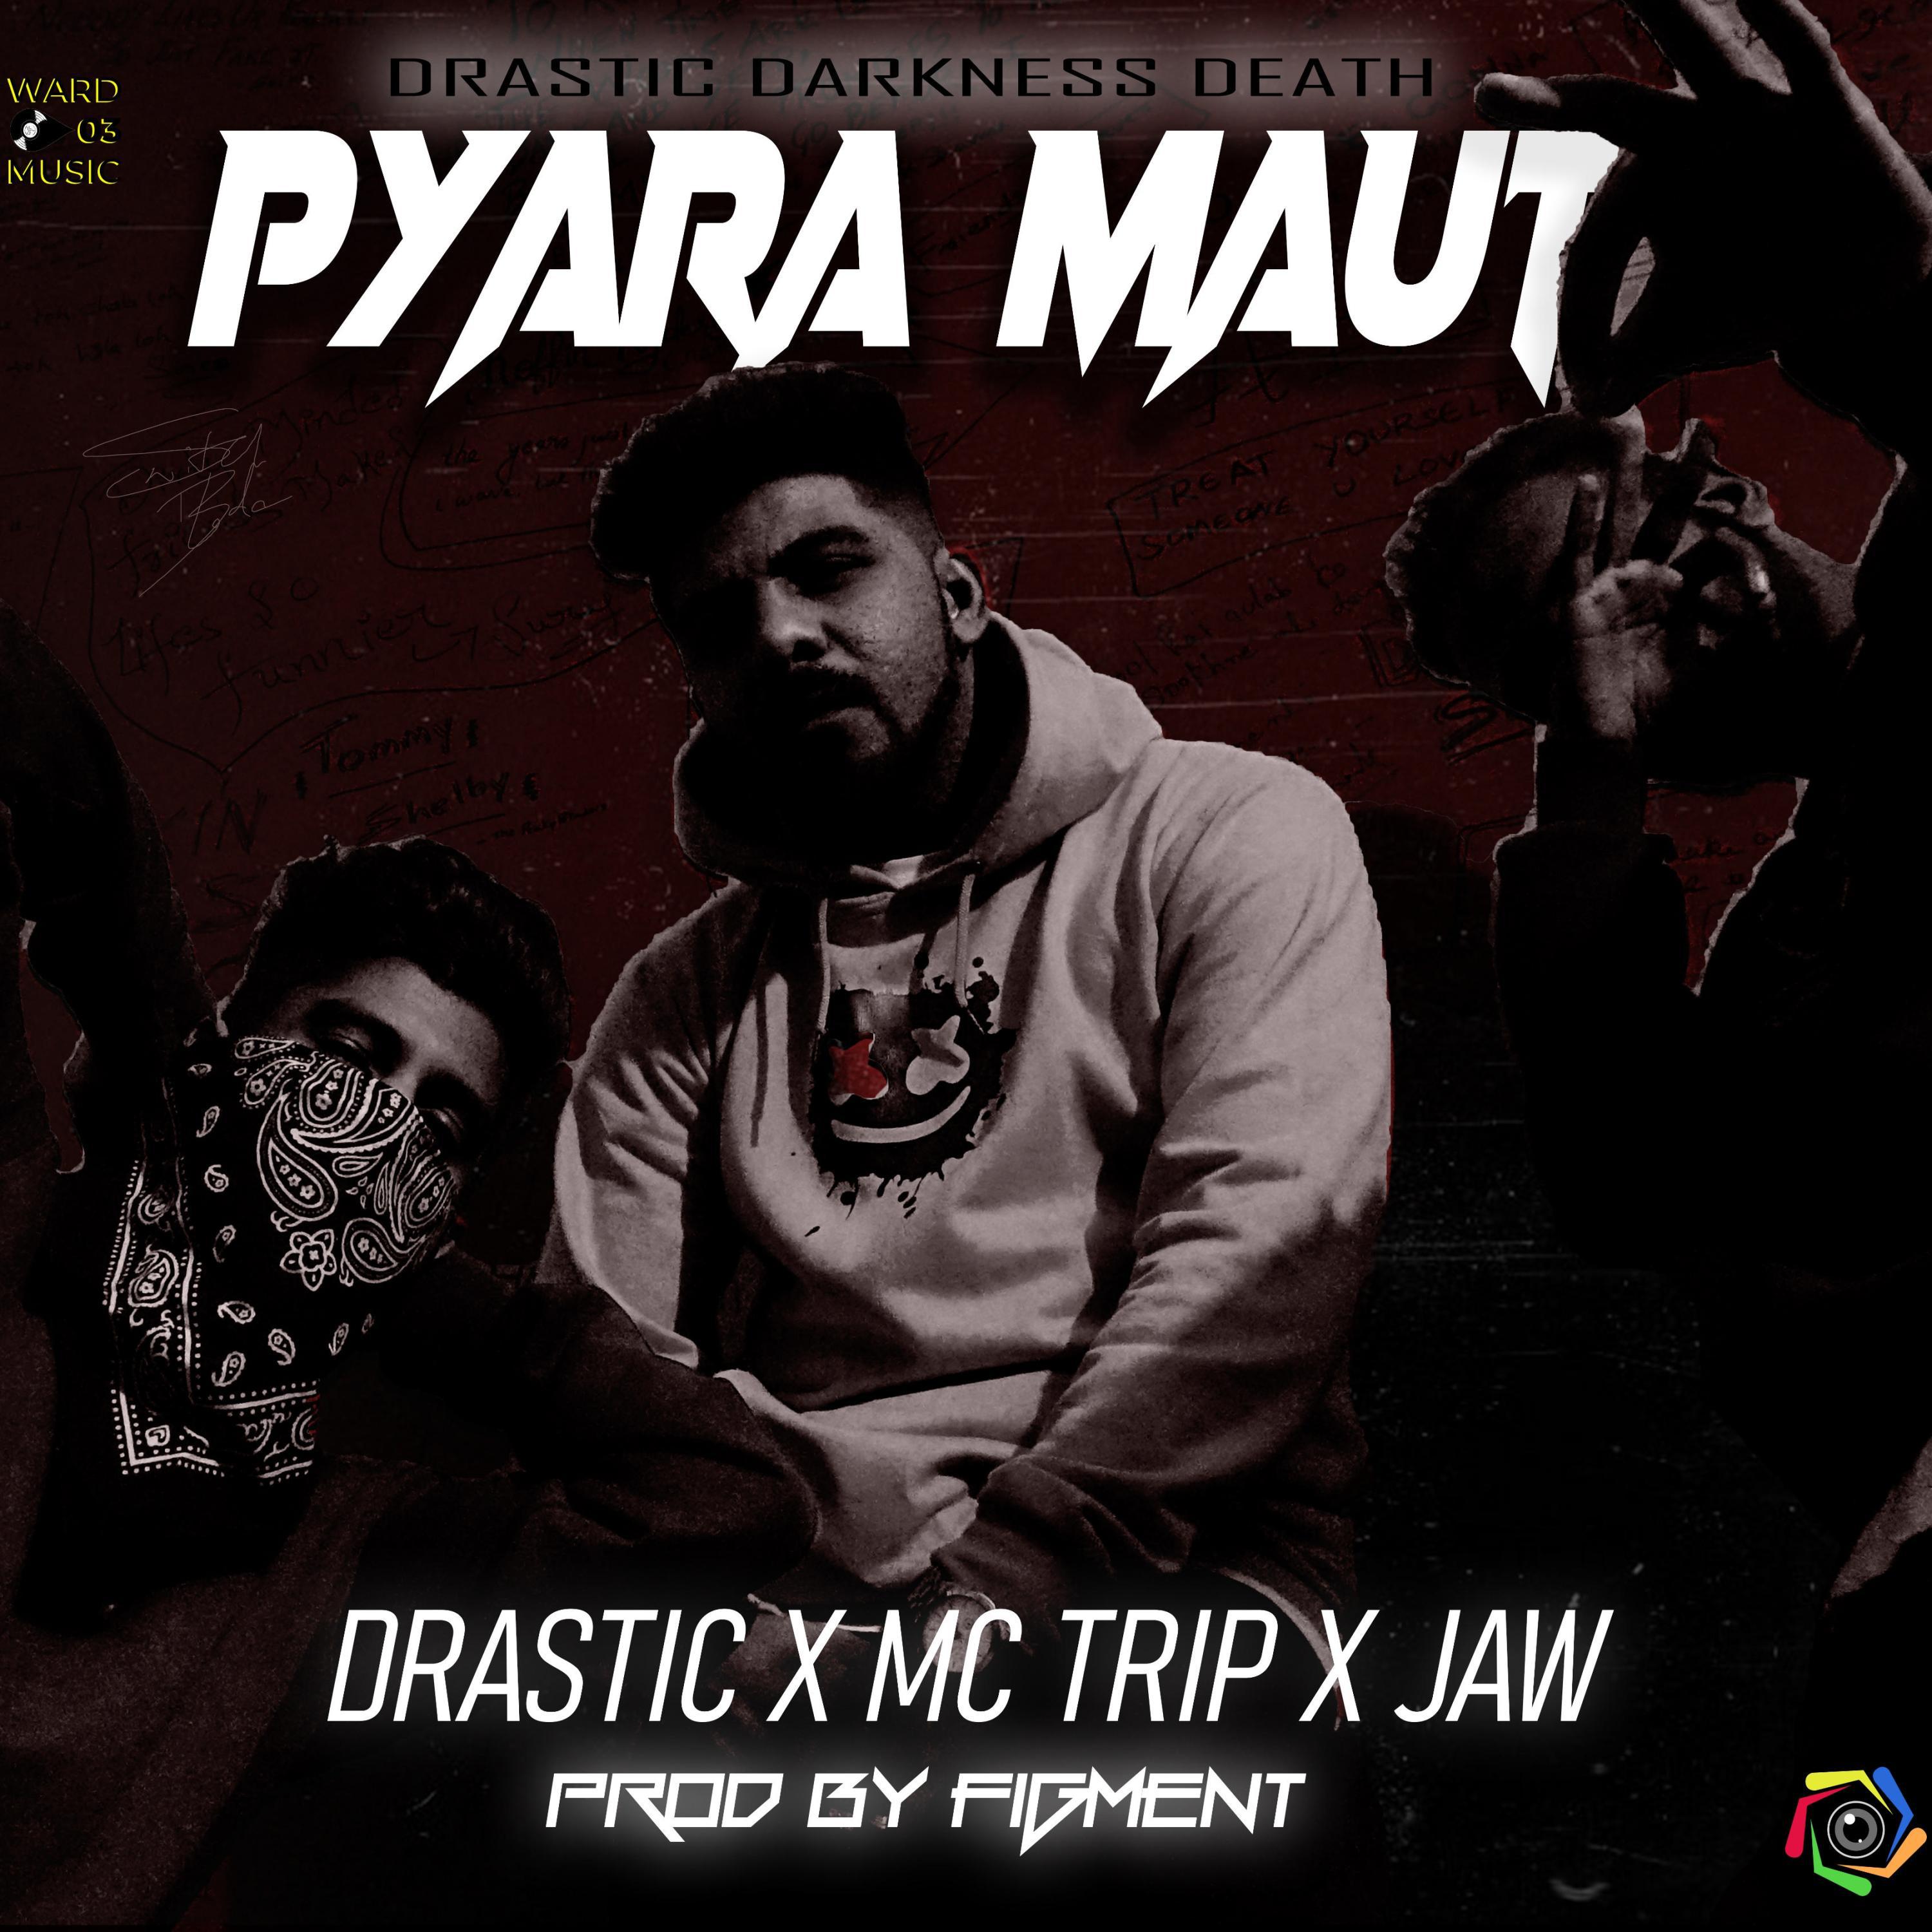 Drastic - Pyara Maut